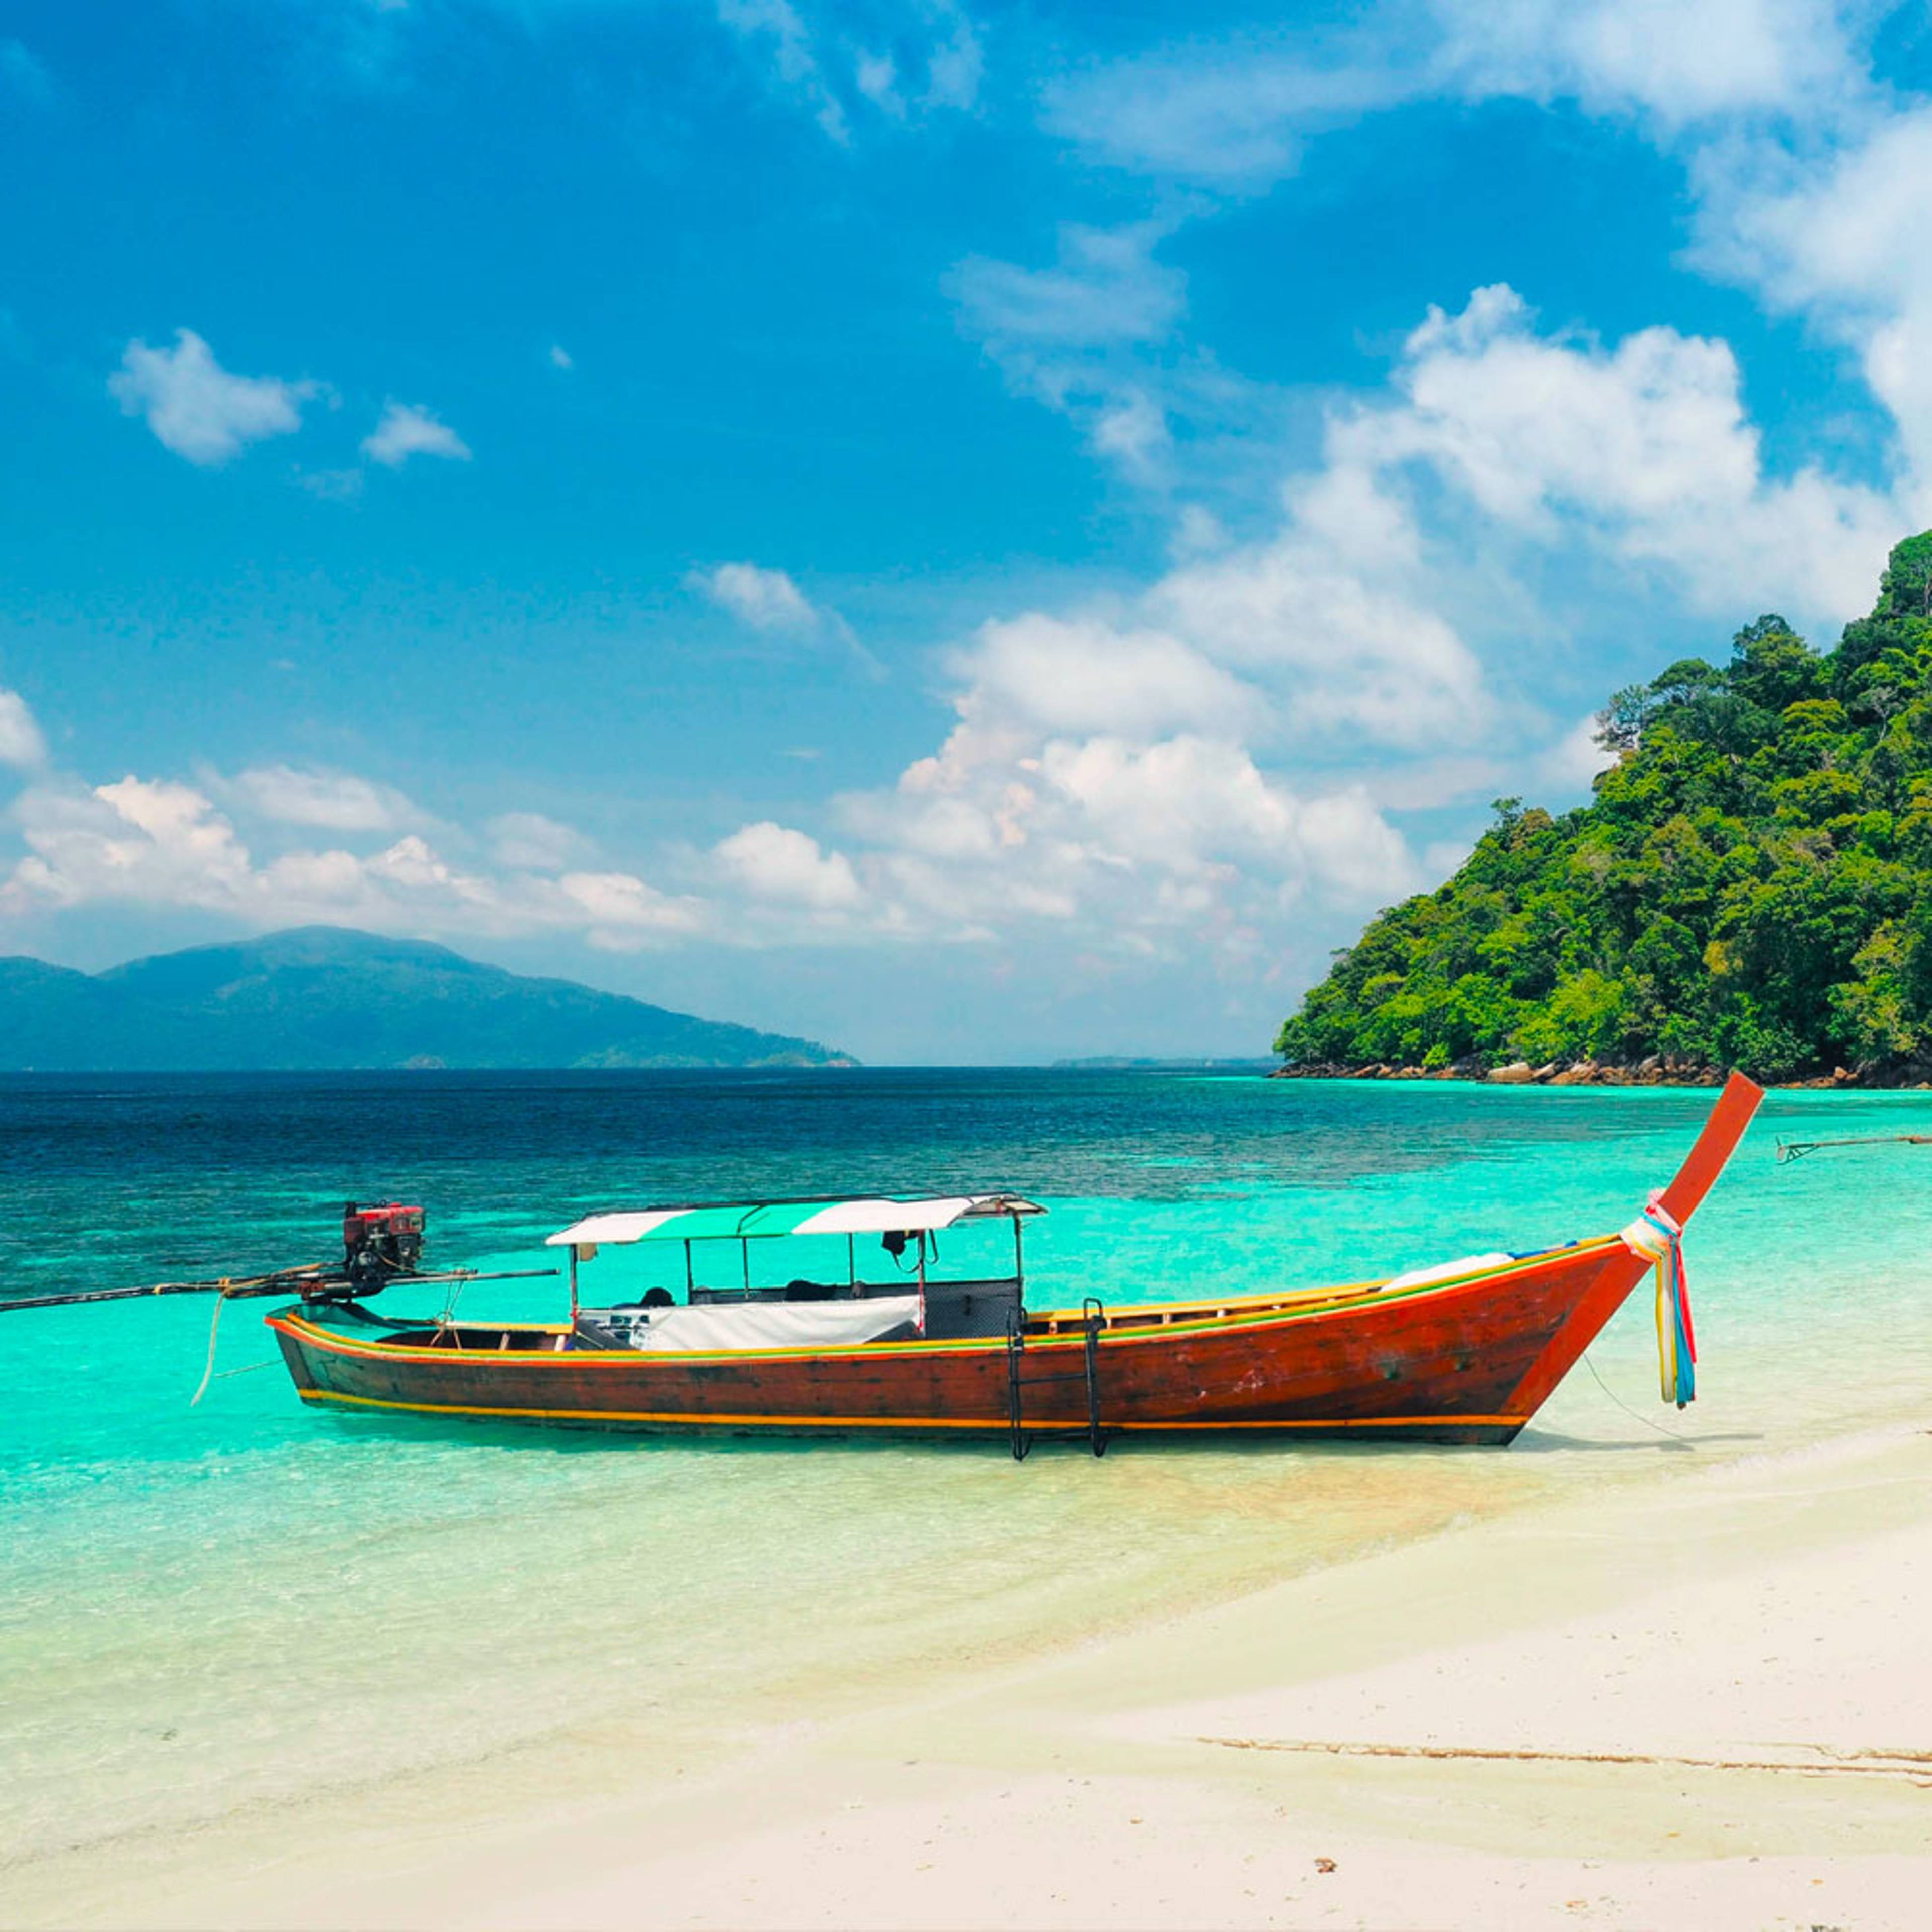 Découvrez les plus belles plages lors de votre voyage en Thaïlande 100% sur mesure